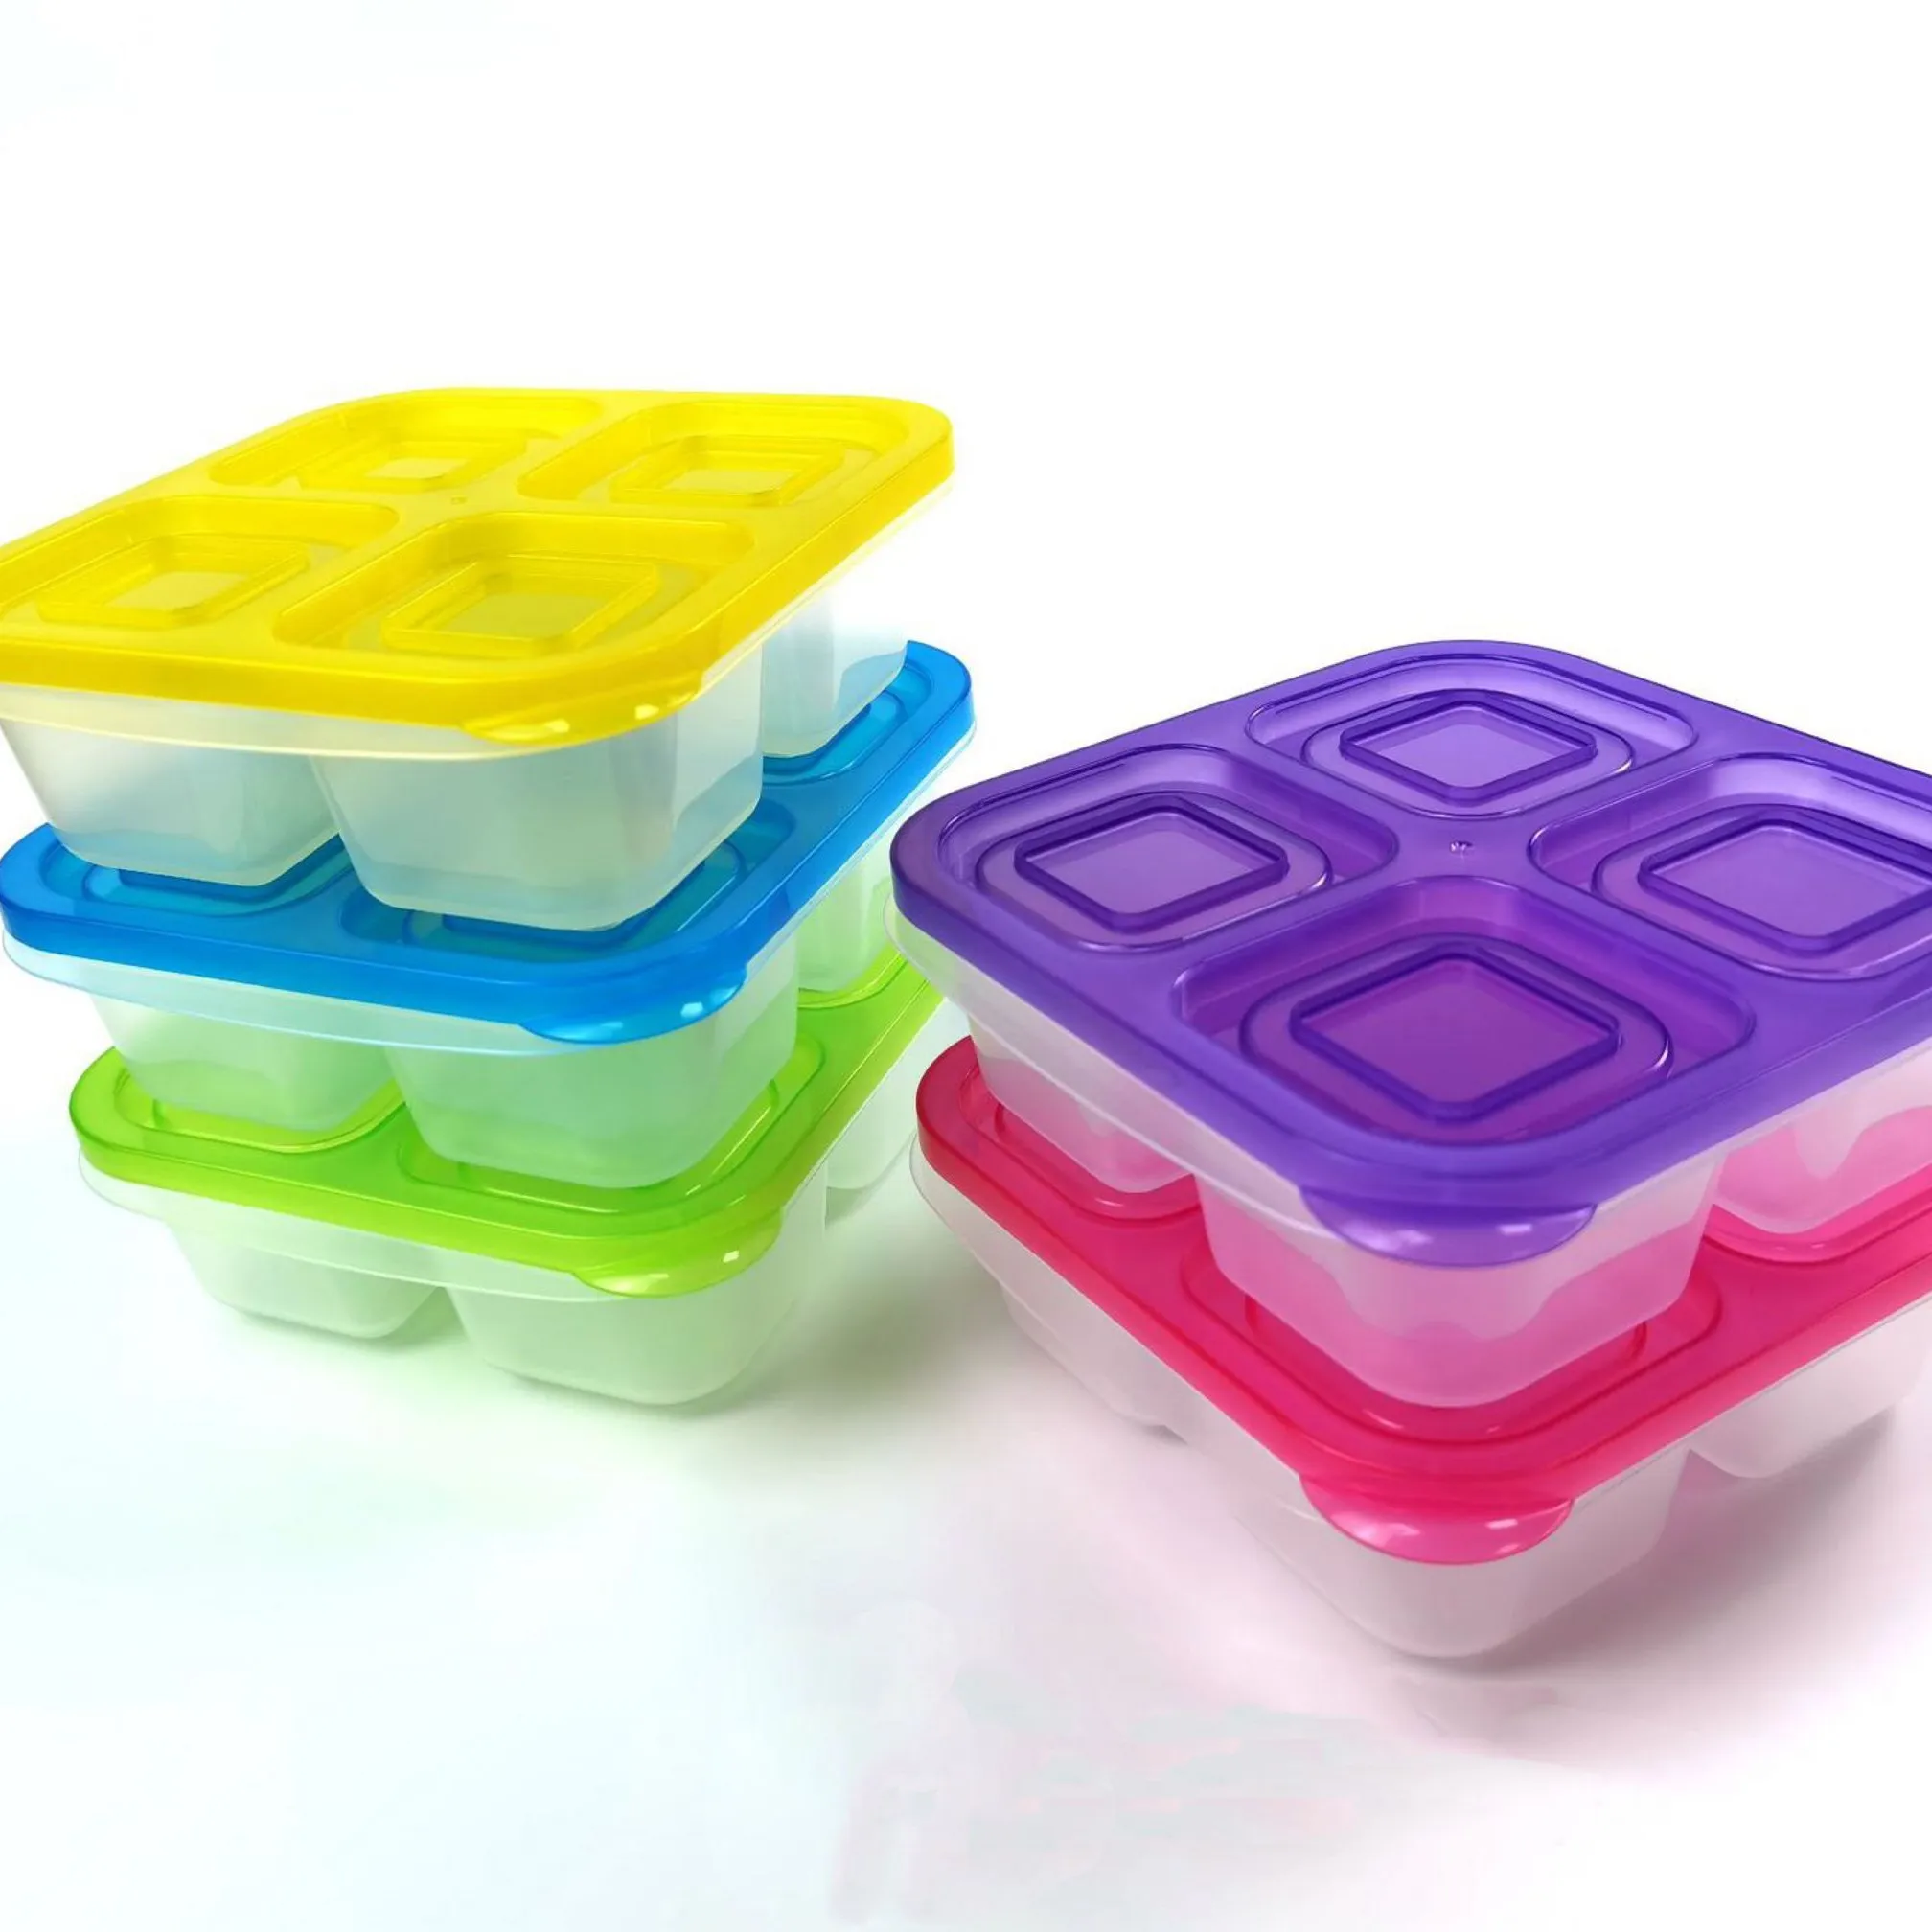 Wiederverwendbare Lebensmittel Container Klar 4-Fach Kinder Mittagessen Bento Snack Boxen Für Schule Arbeit Und Reisen